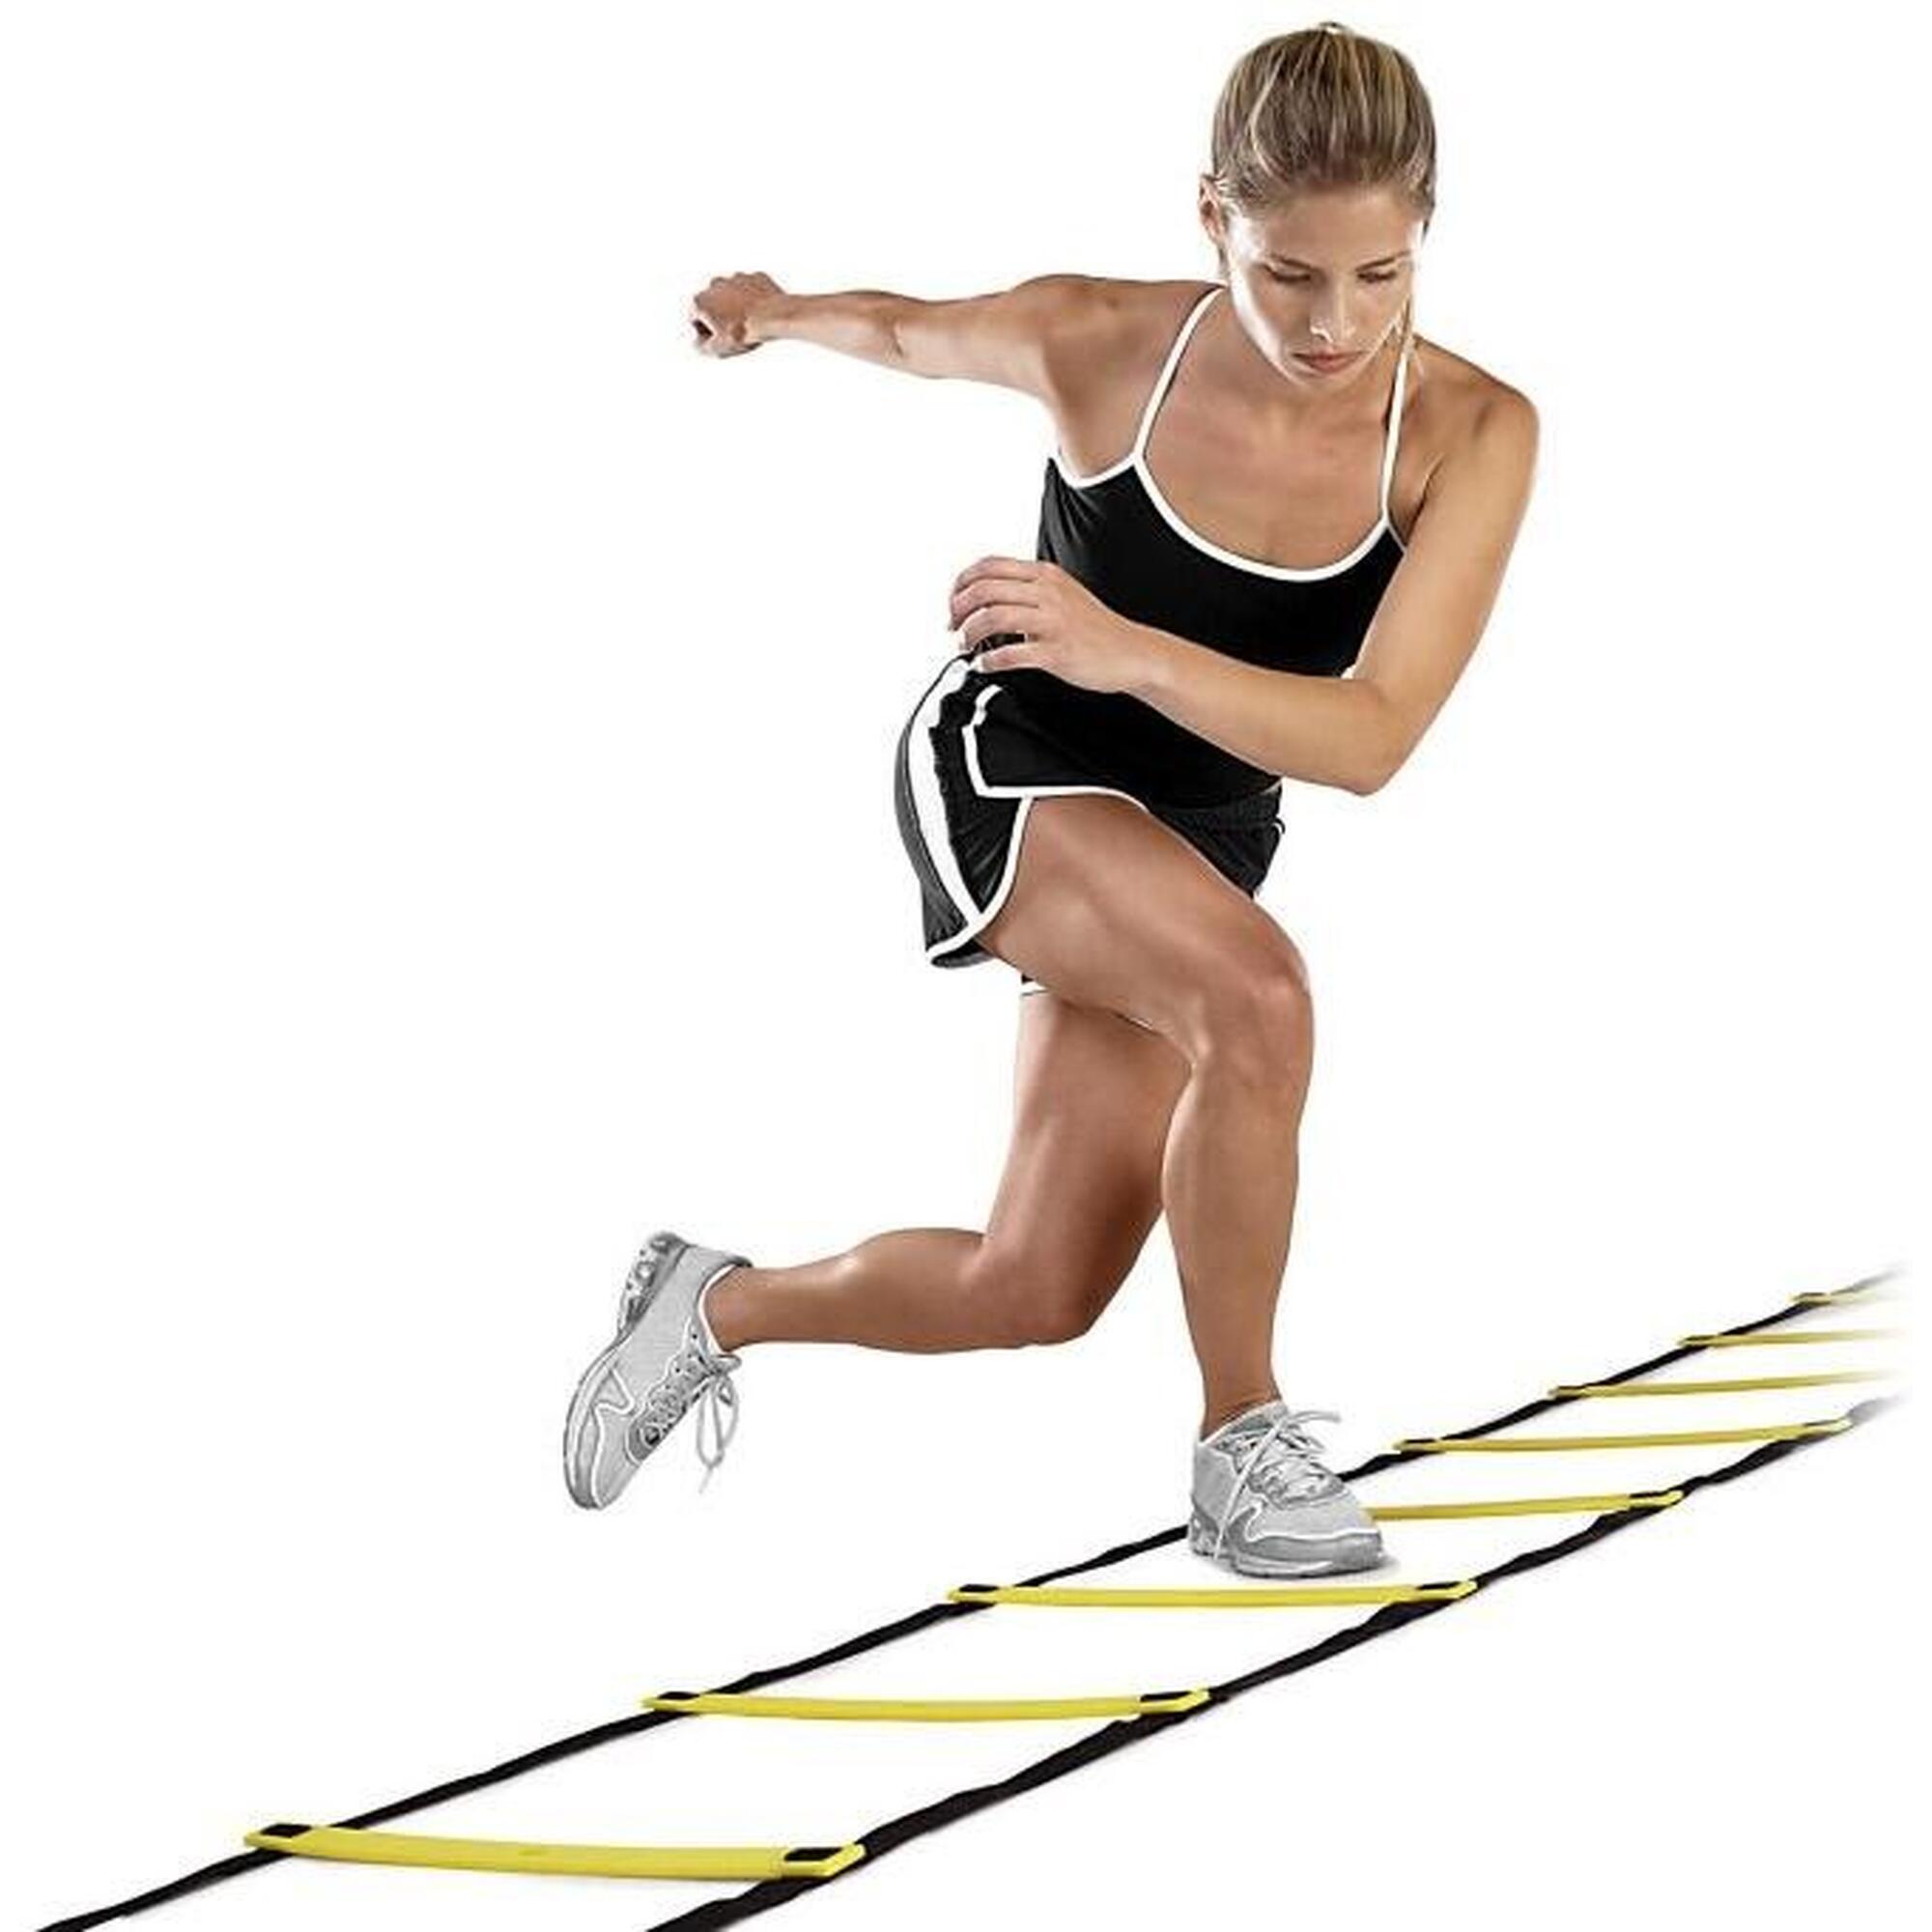 Escalera de entrenamiento Quick Ladder, negra y amarilla SKLZ